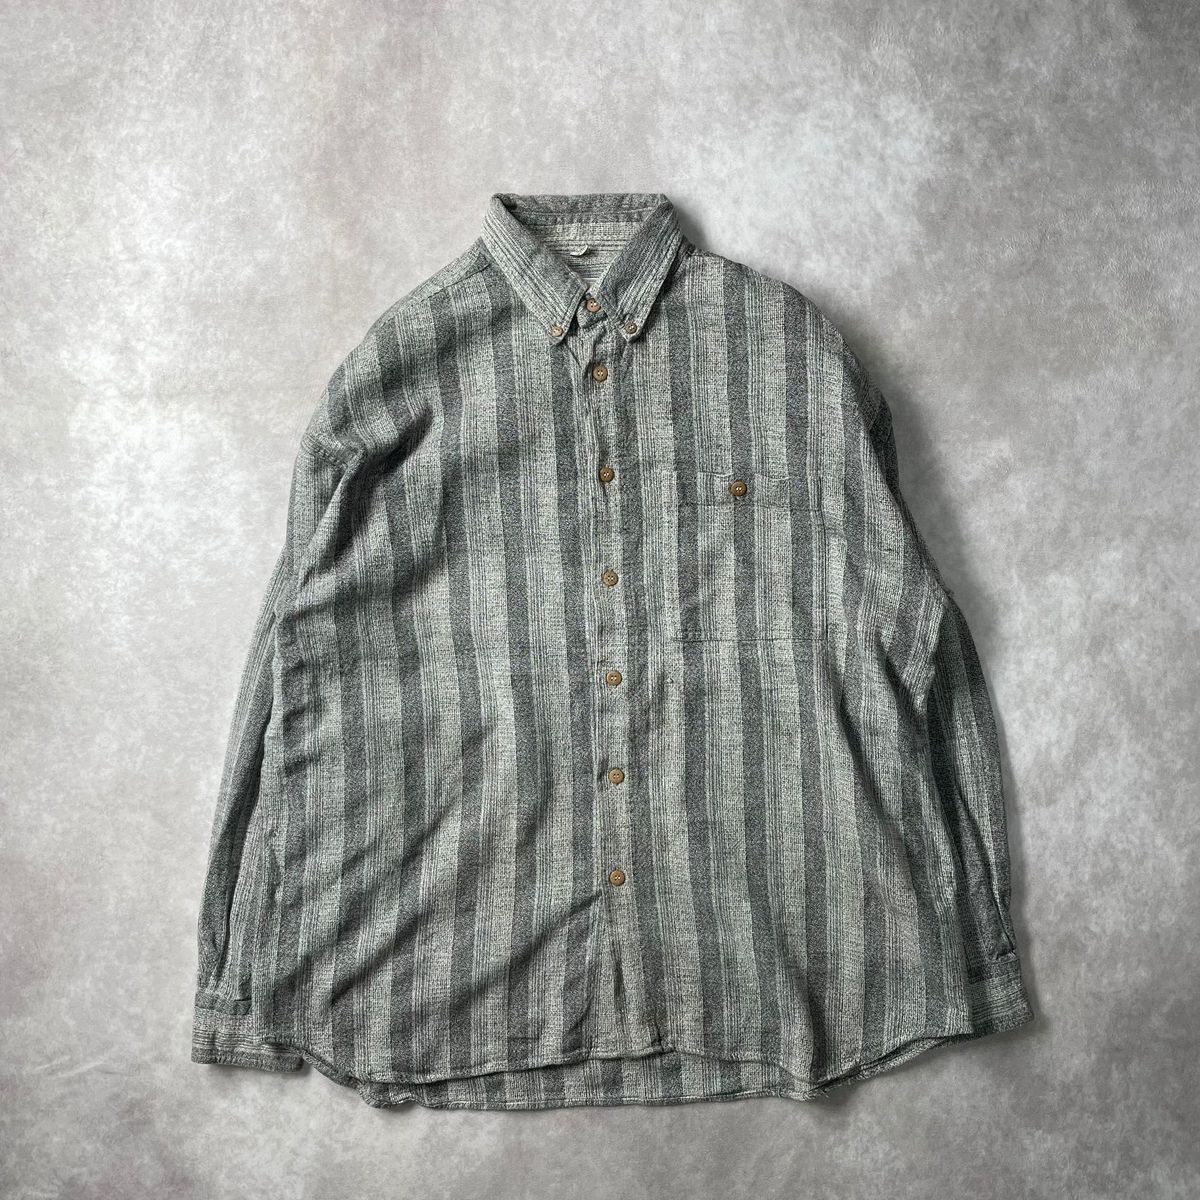 ユーロヴィンテージ 70s〜80sストライプ BDシャツ ウッドボタン L